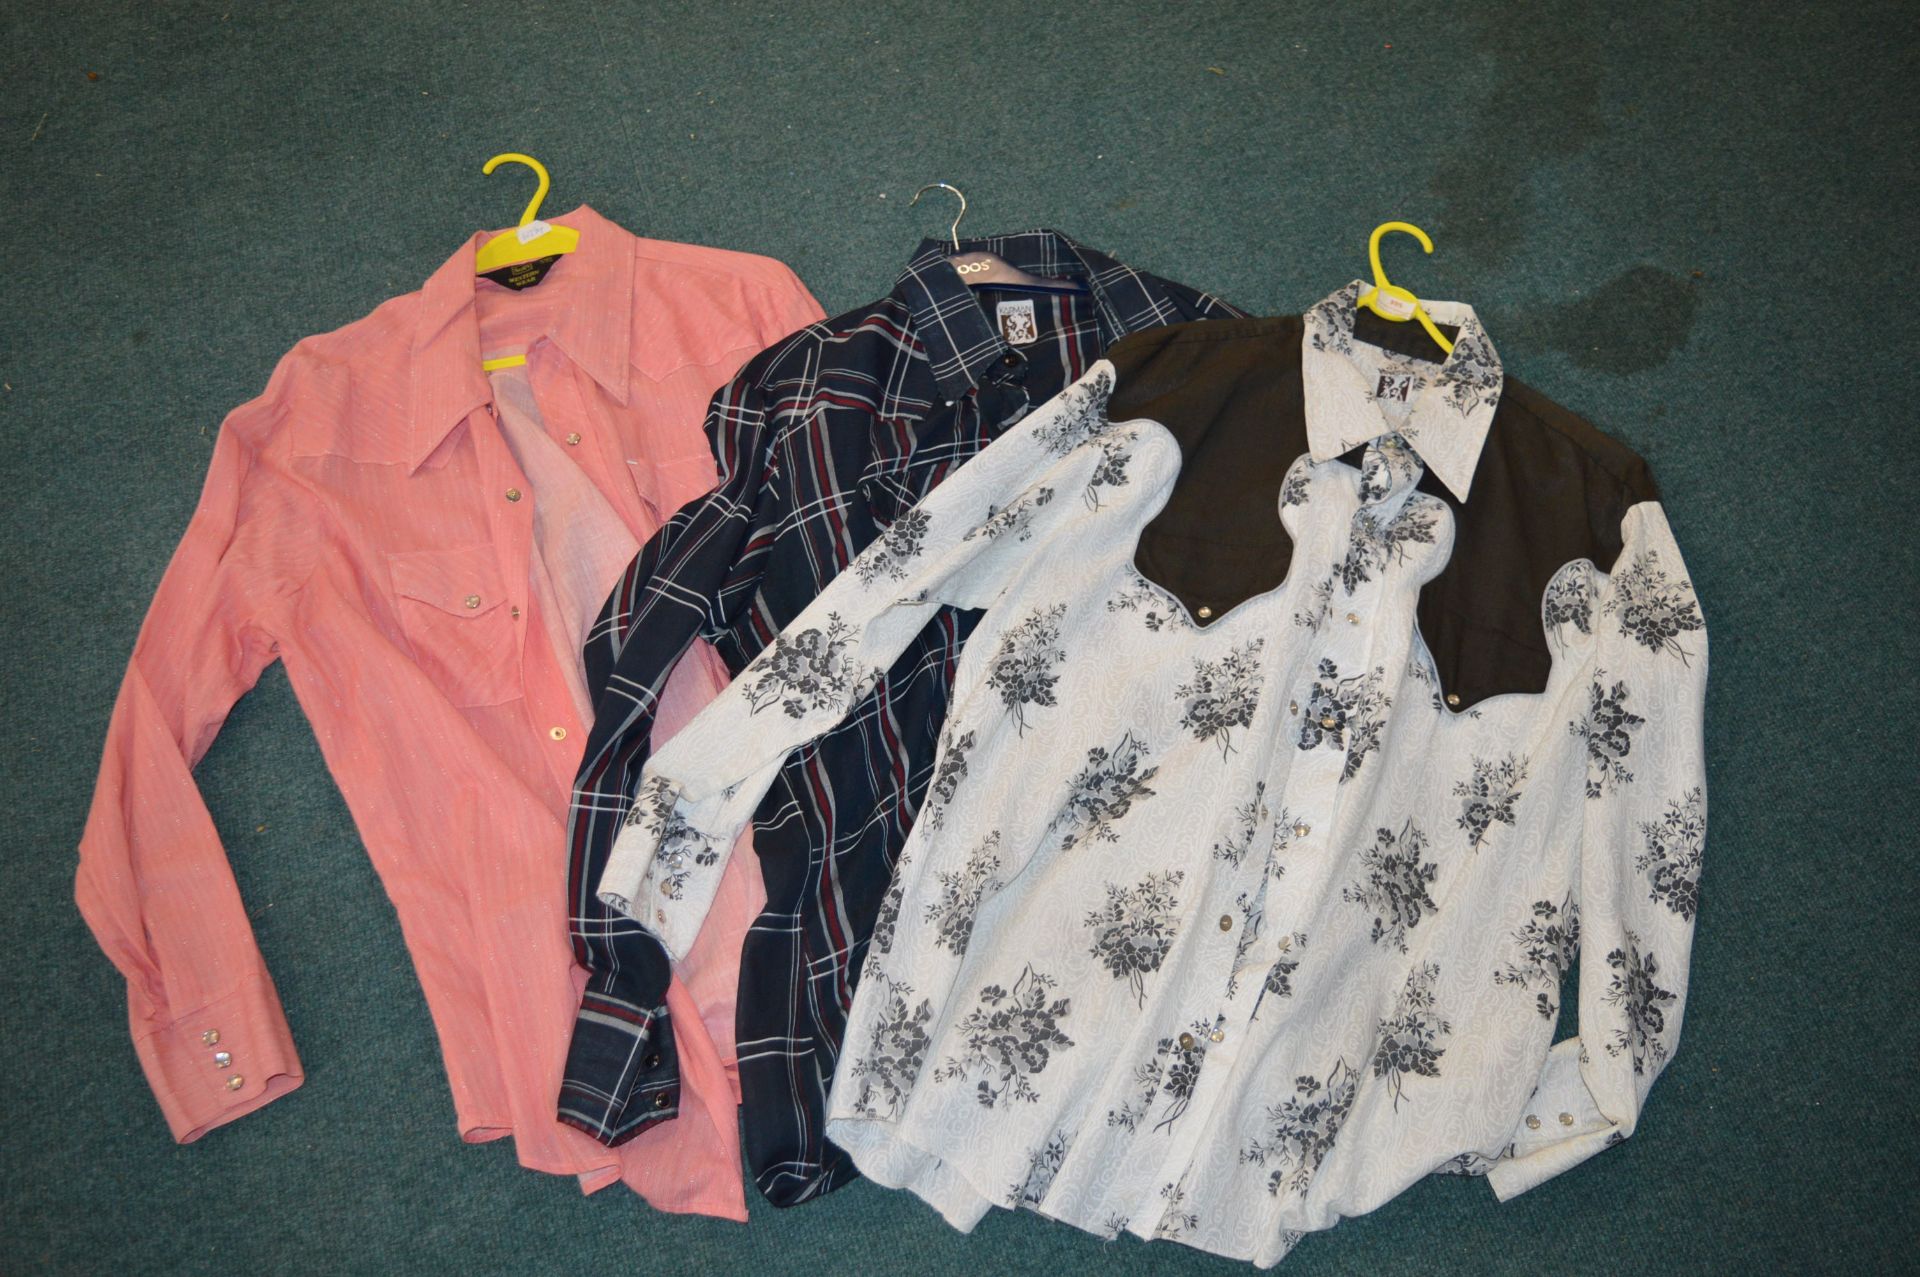 Western Shirt by Karman Size: XL and a Sears Western Wear Shirt